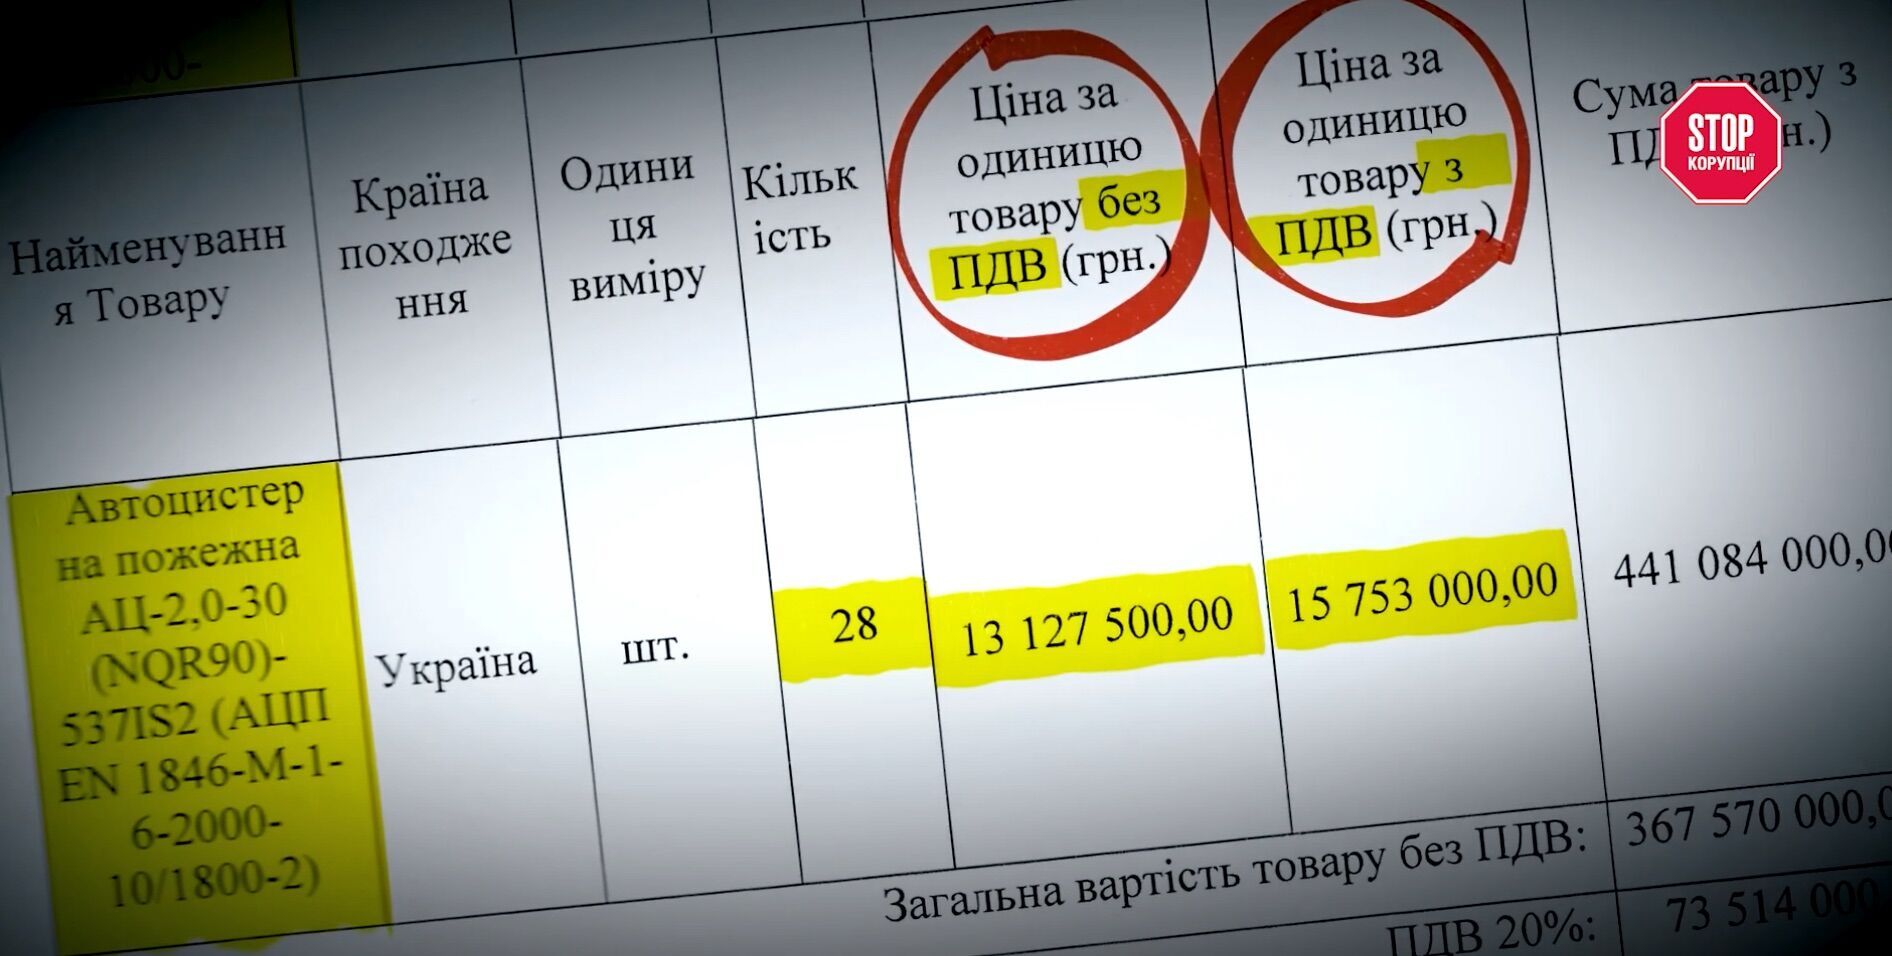 На разнице в ценах ''Пожмашина'' могла дополнительно ''заработать'' 103 млн. грн.